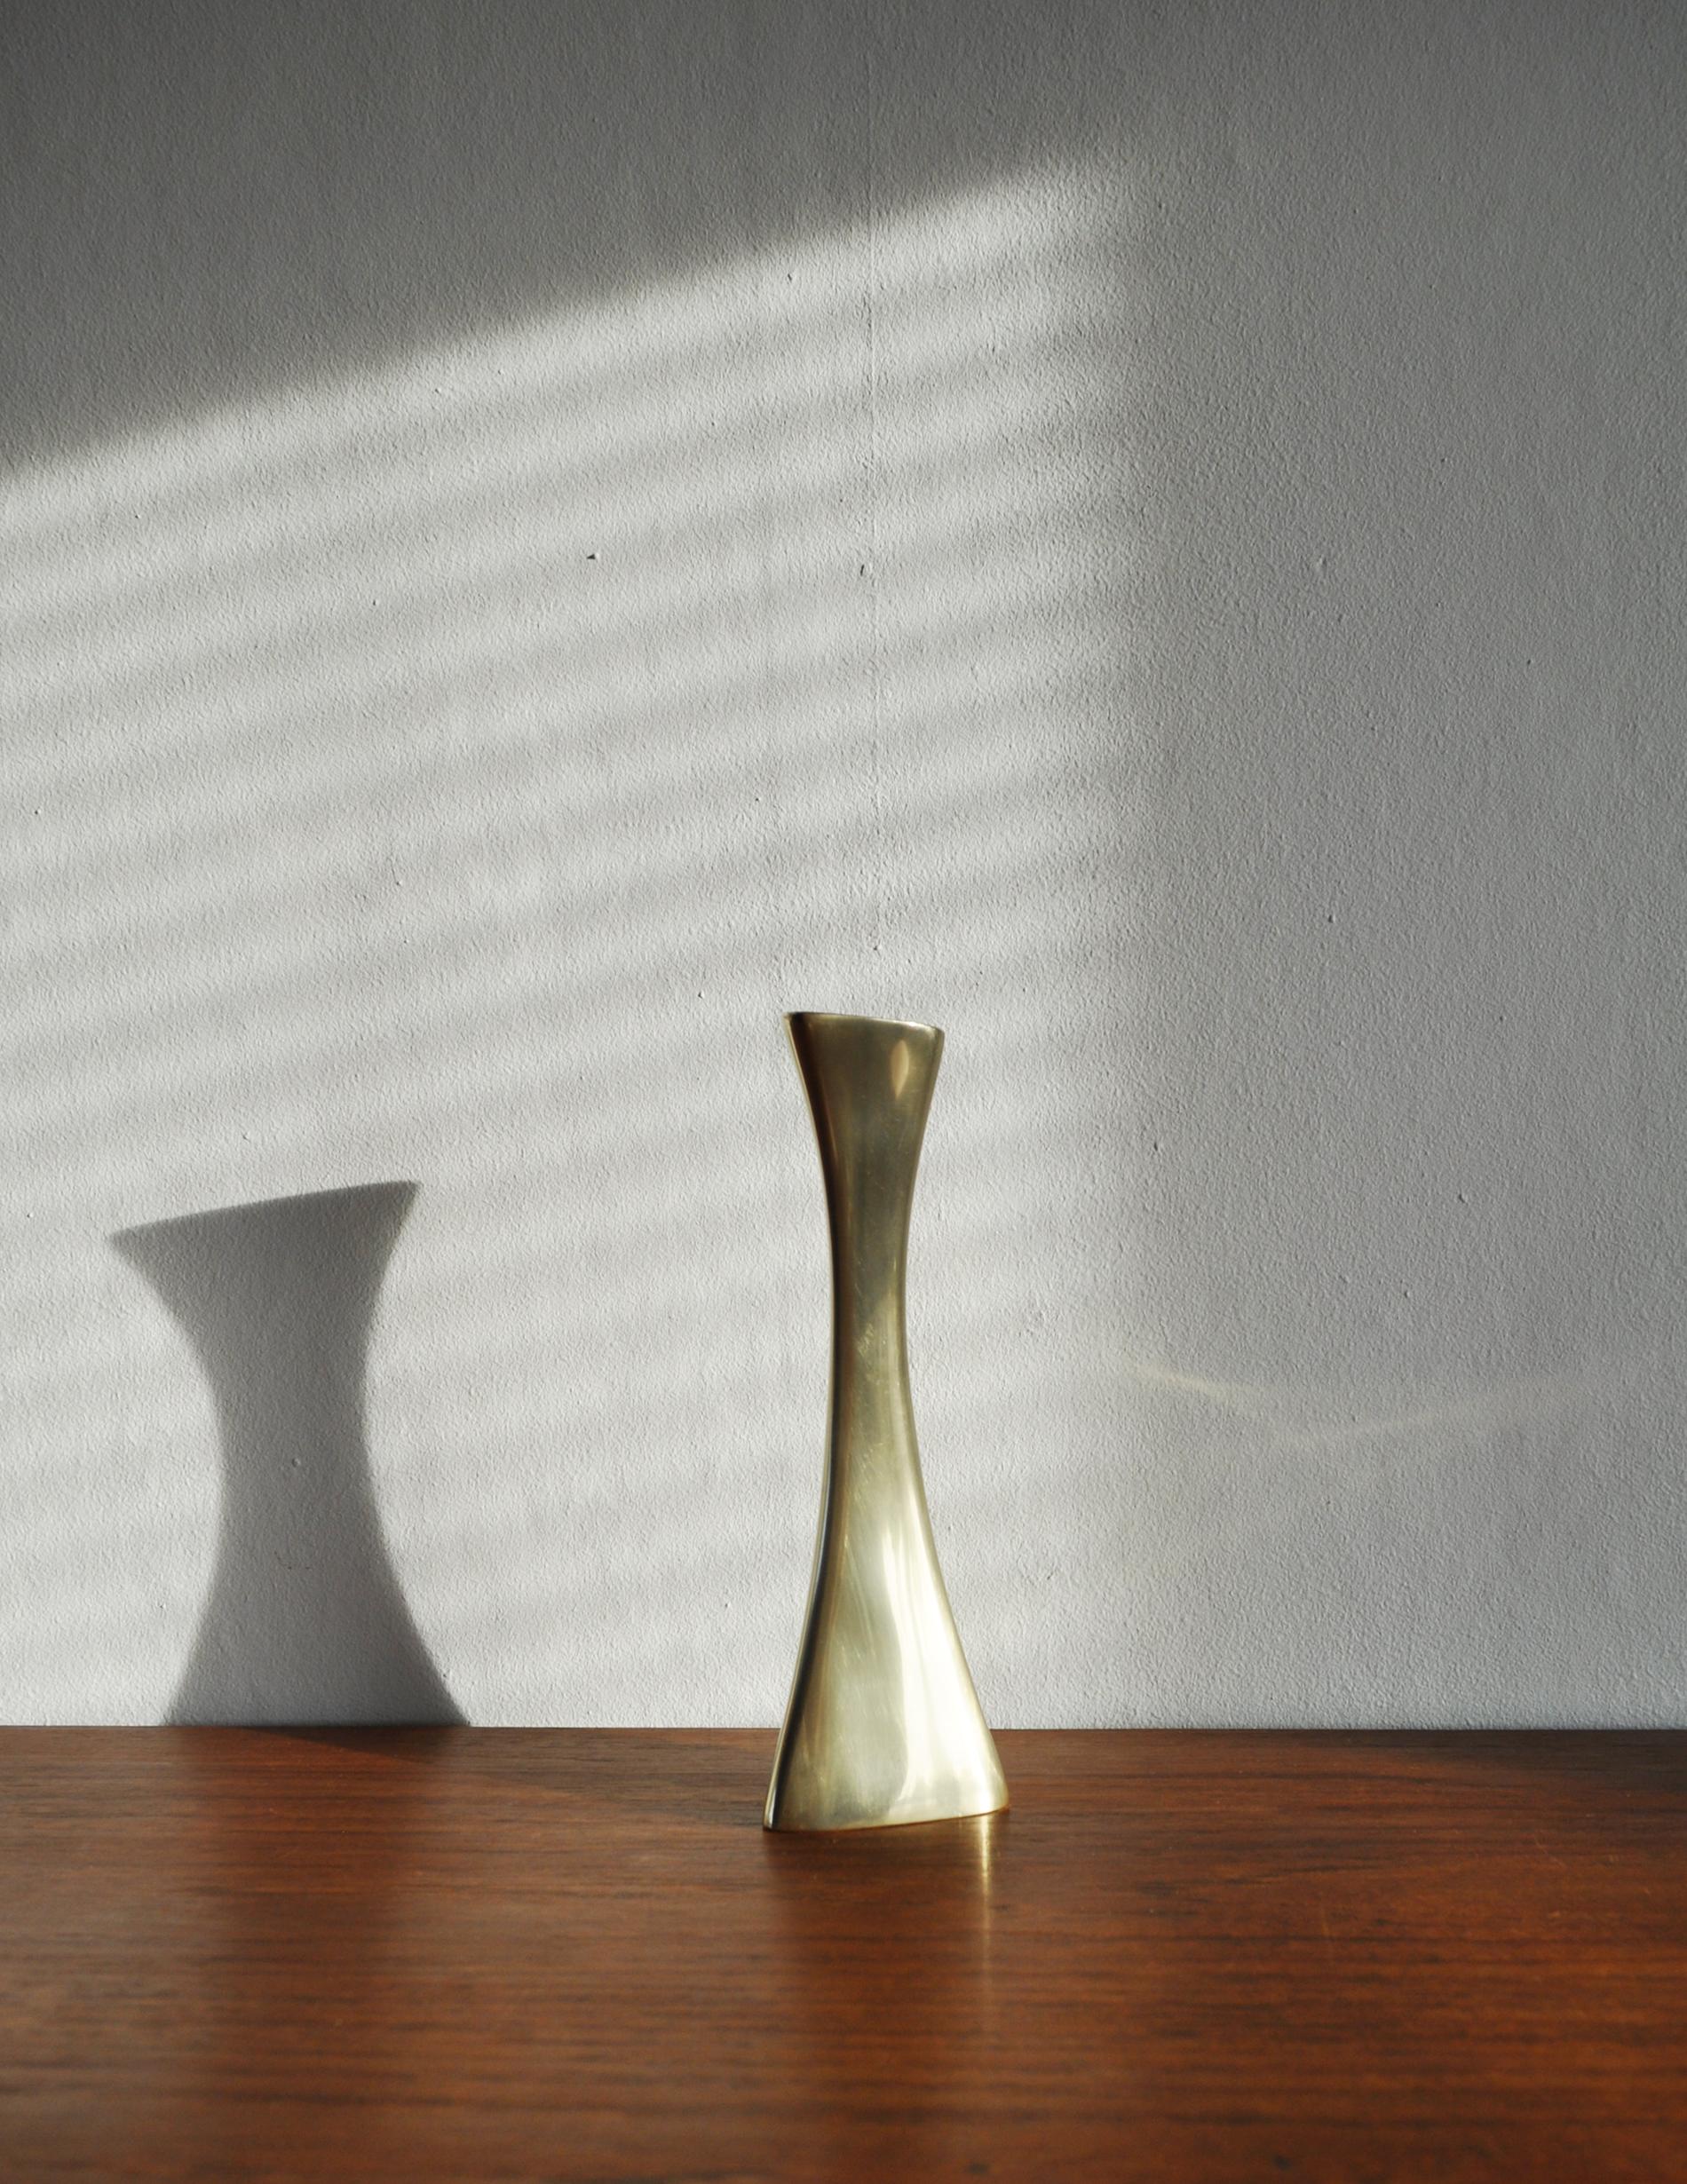 Swedish organic shaped solid brass candlestick or vase designed by Karl-Erik Ytterberg for BCA Eskilstuna, 1960s.